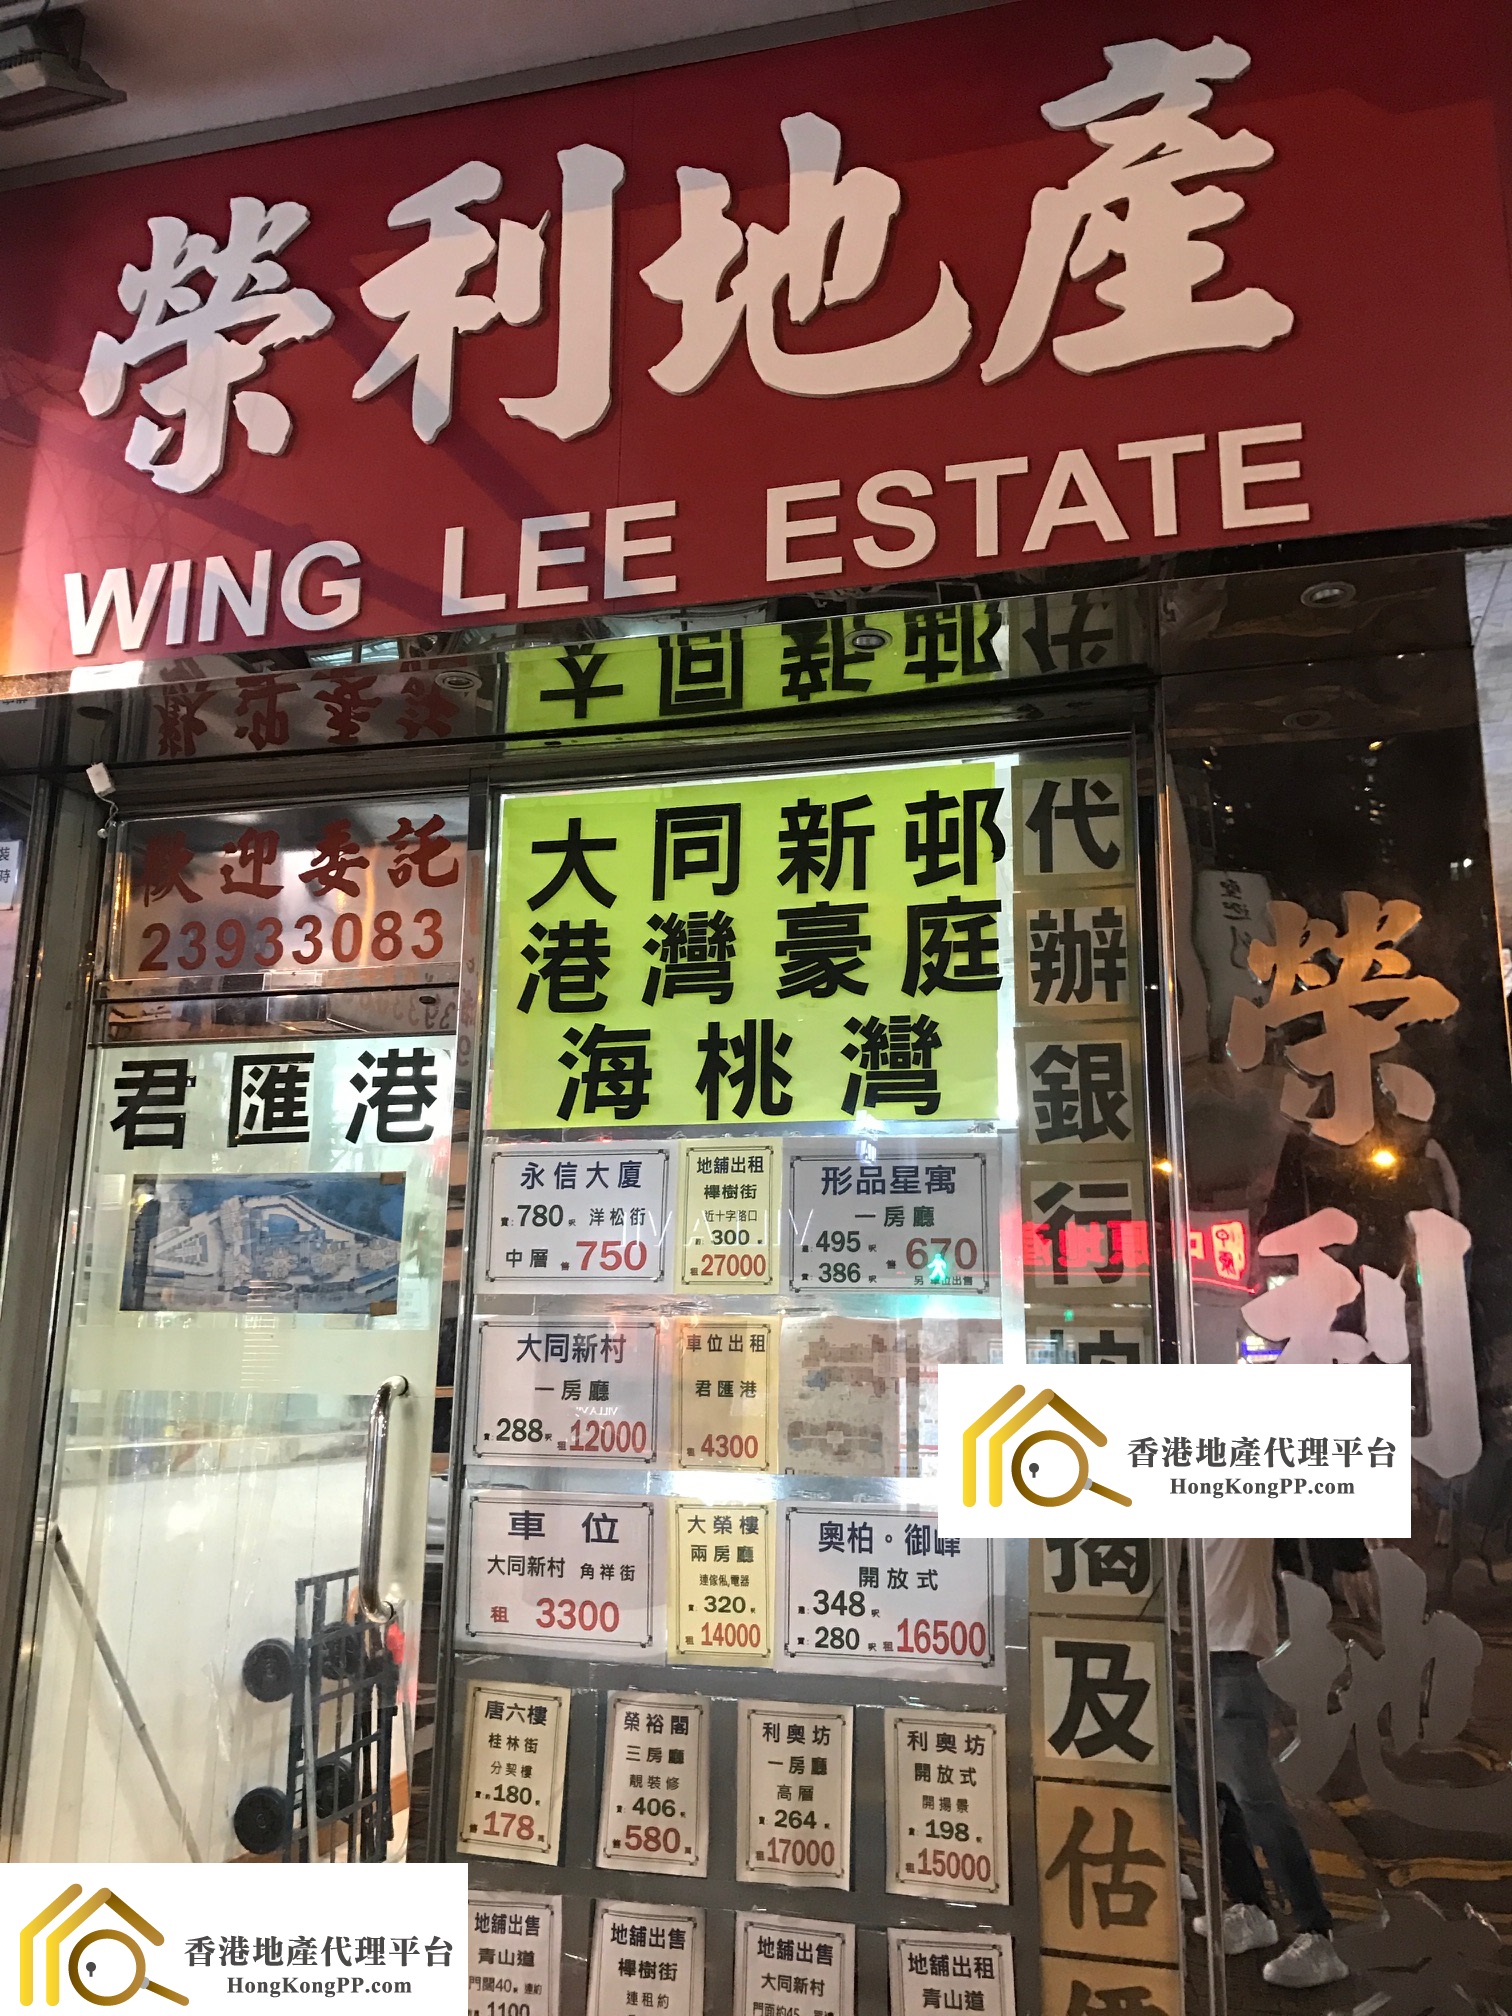 住宅地產代理: 榮利地產 Wing Lee Estate